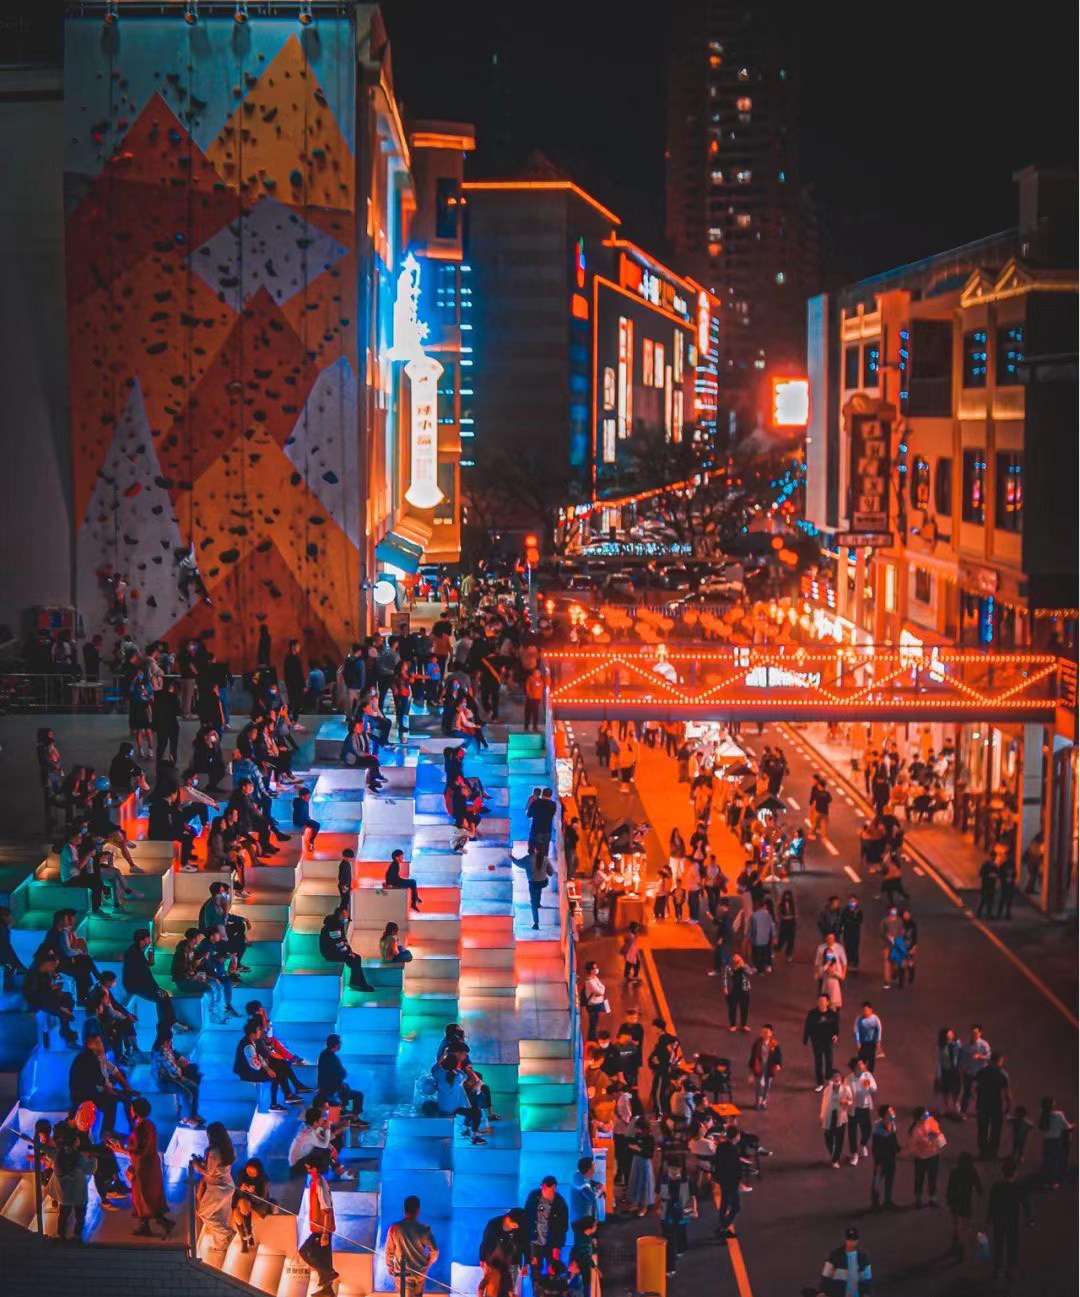 广东惠州33号青年街区照明设计——2021神灯奖申报工程